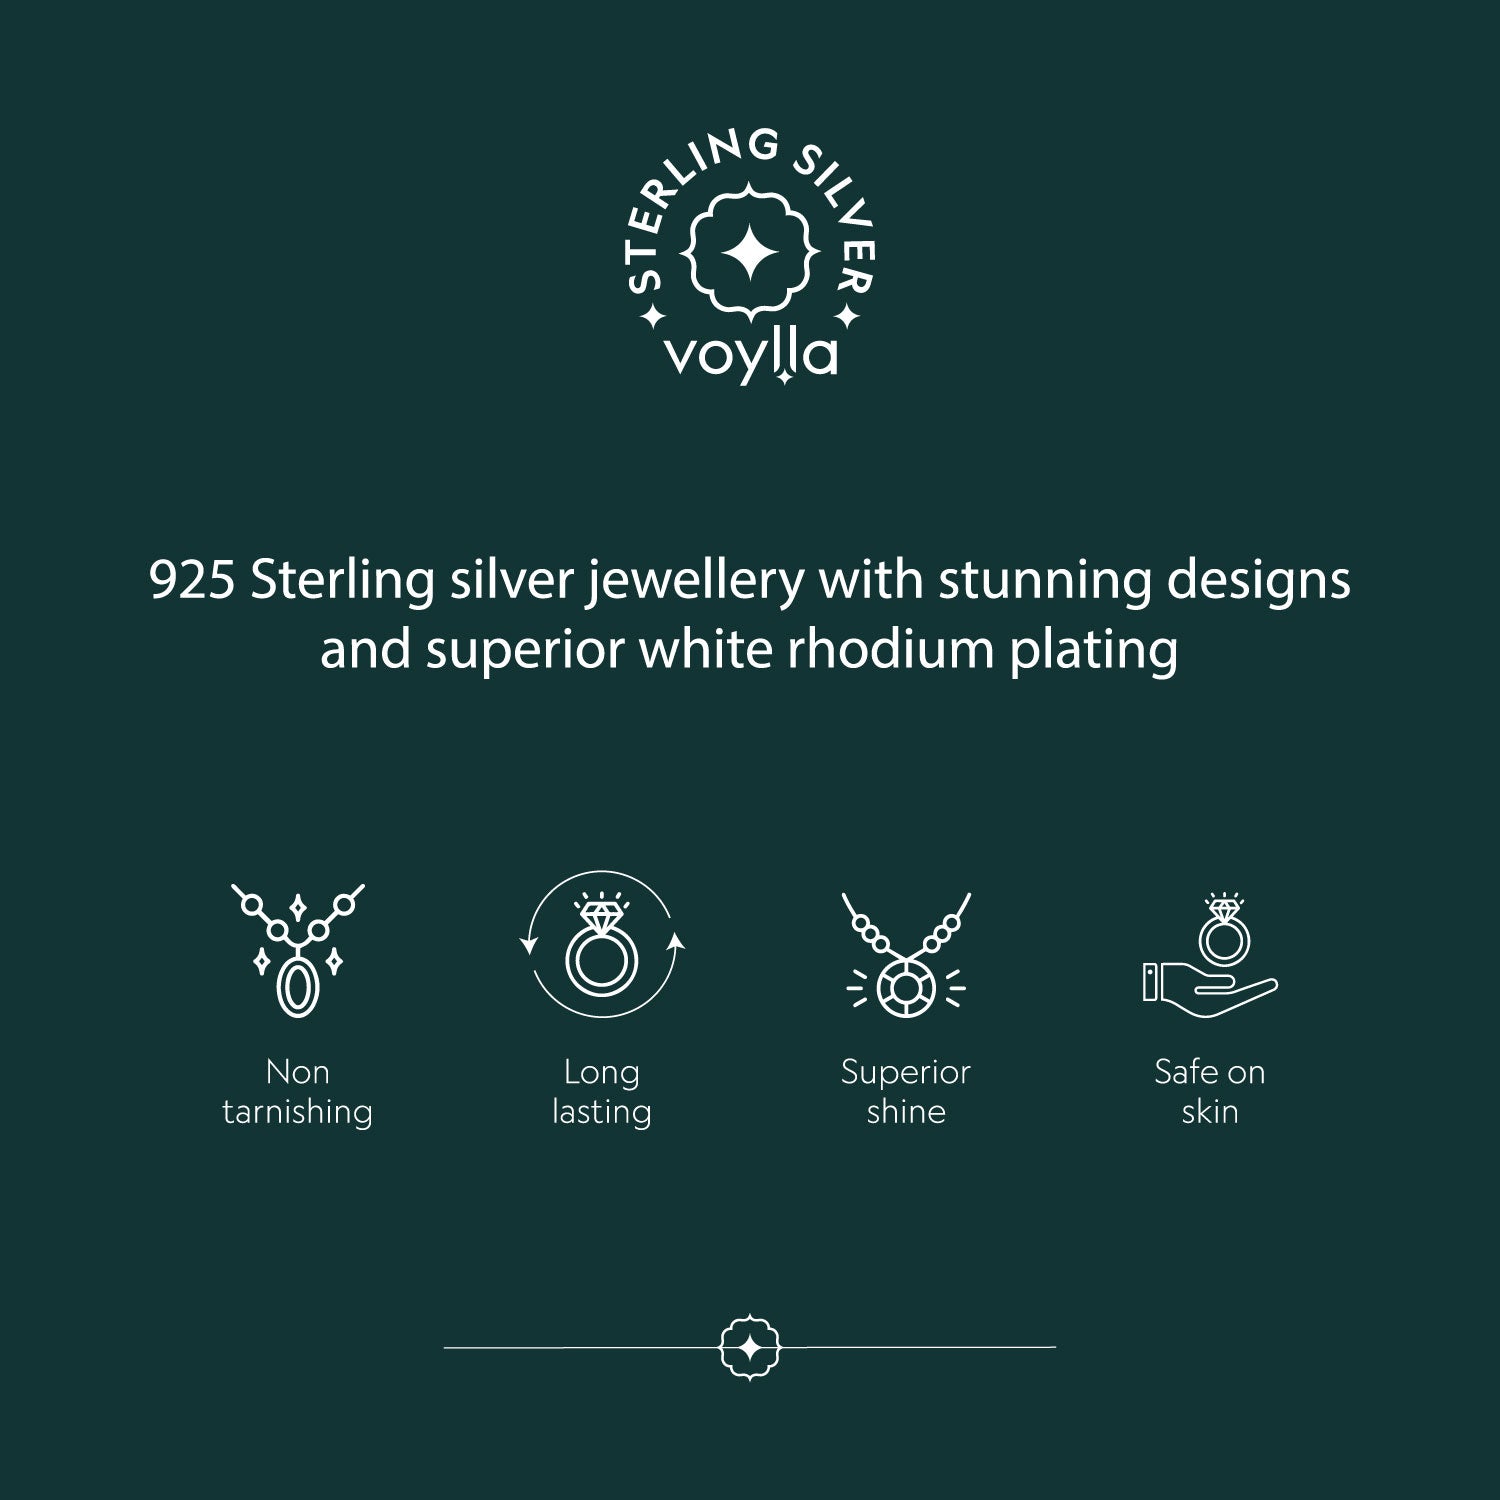 Spikey 925 Sterling Silver Earrings